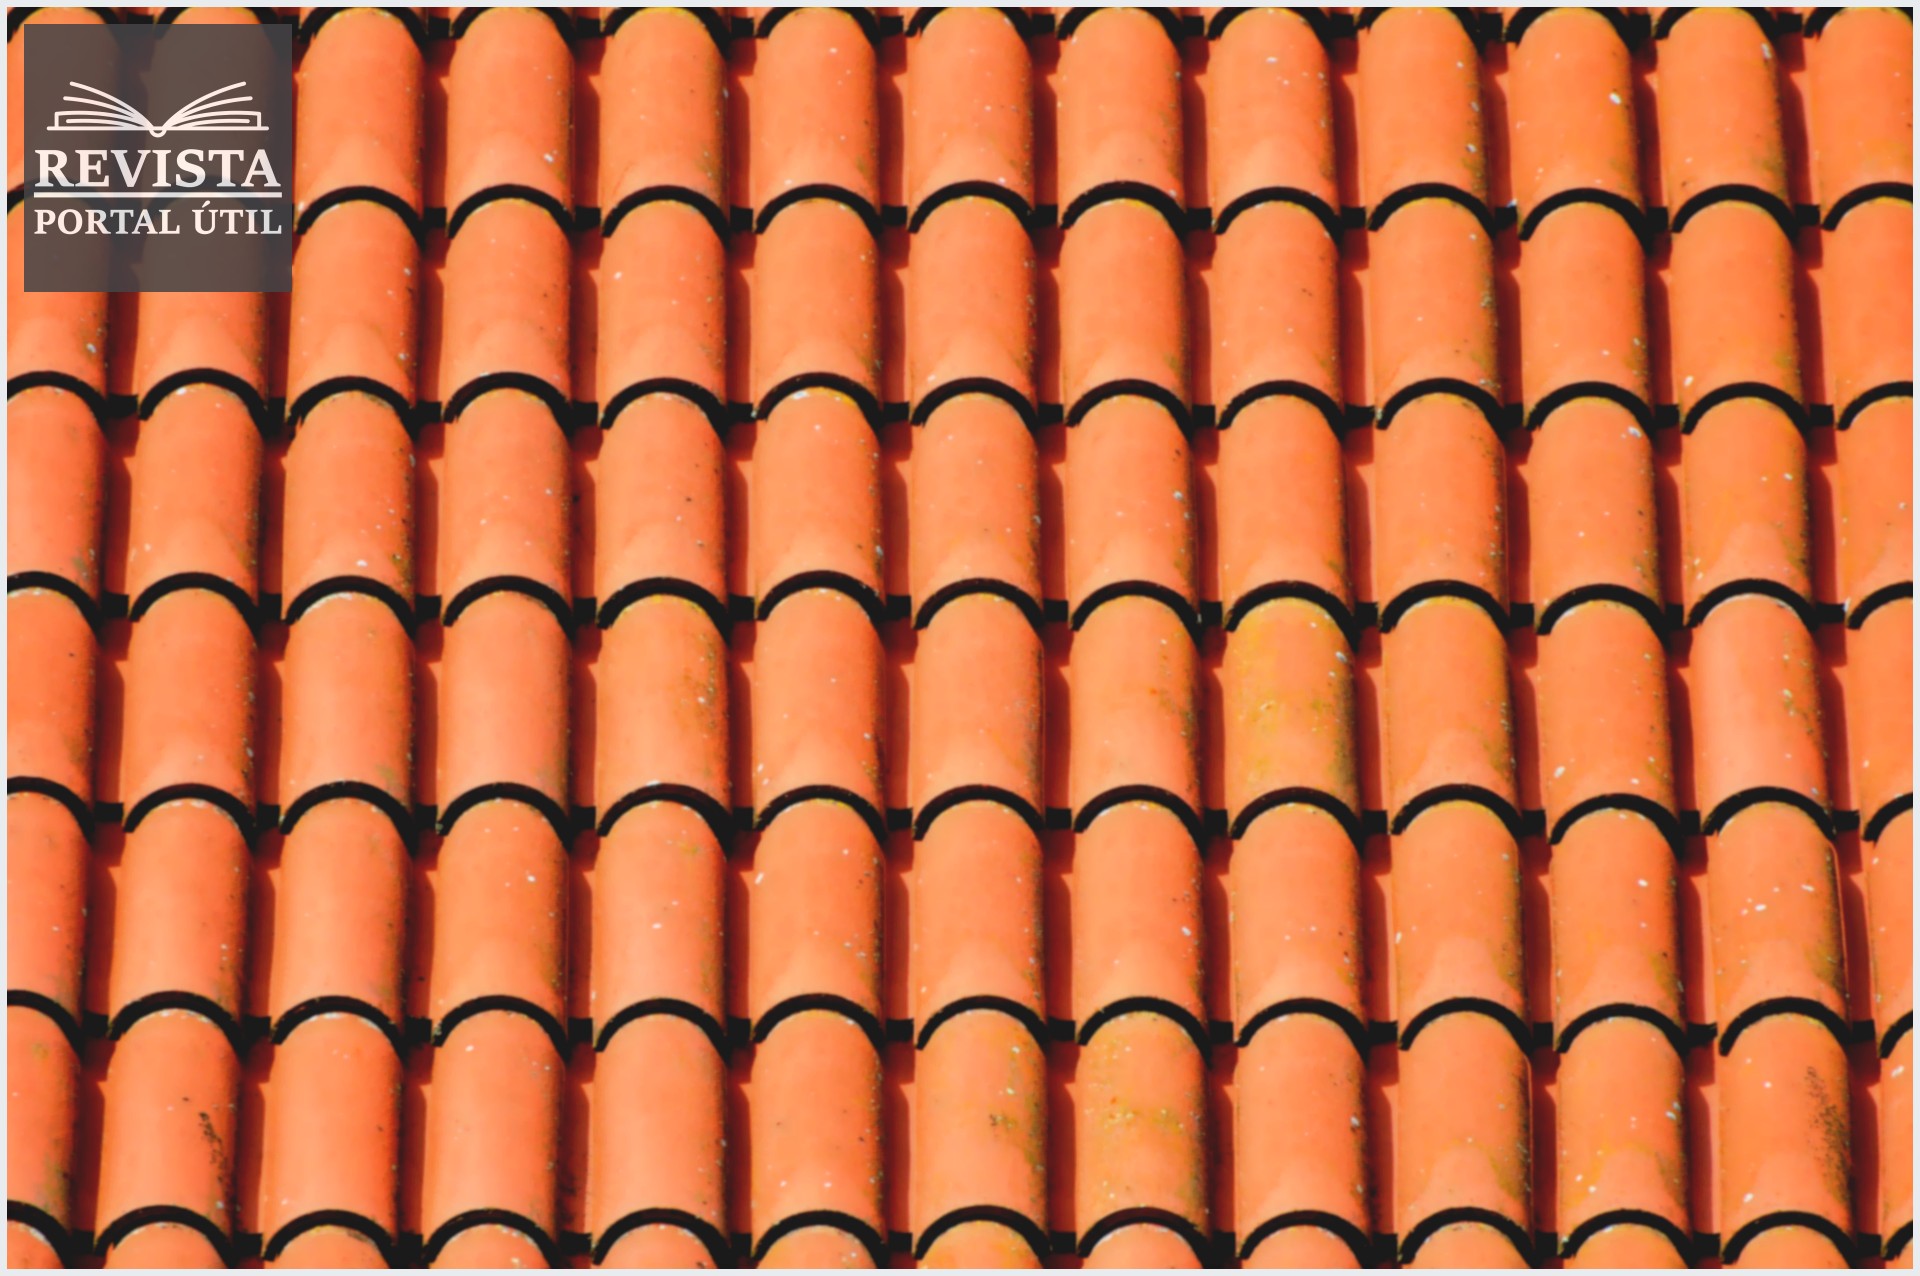 Telhado de telhas coloniais